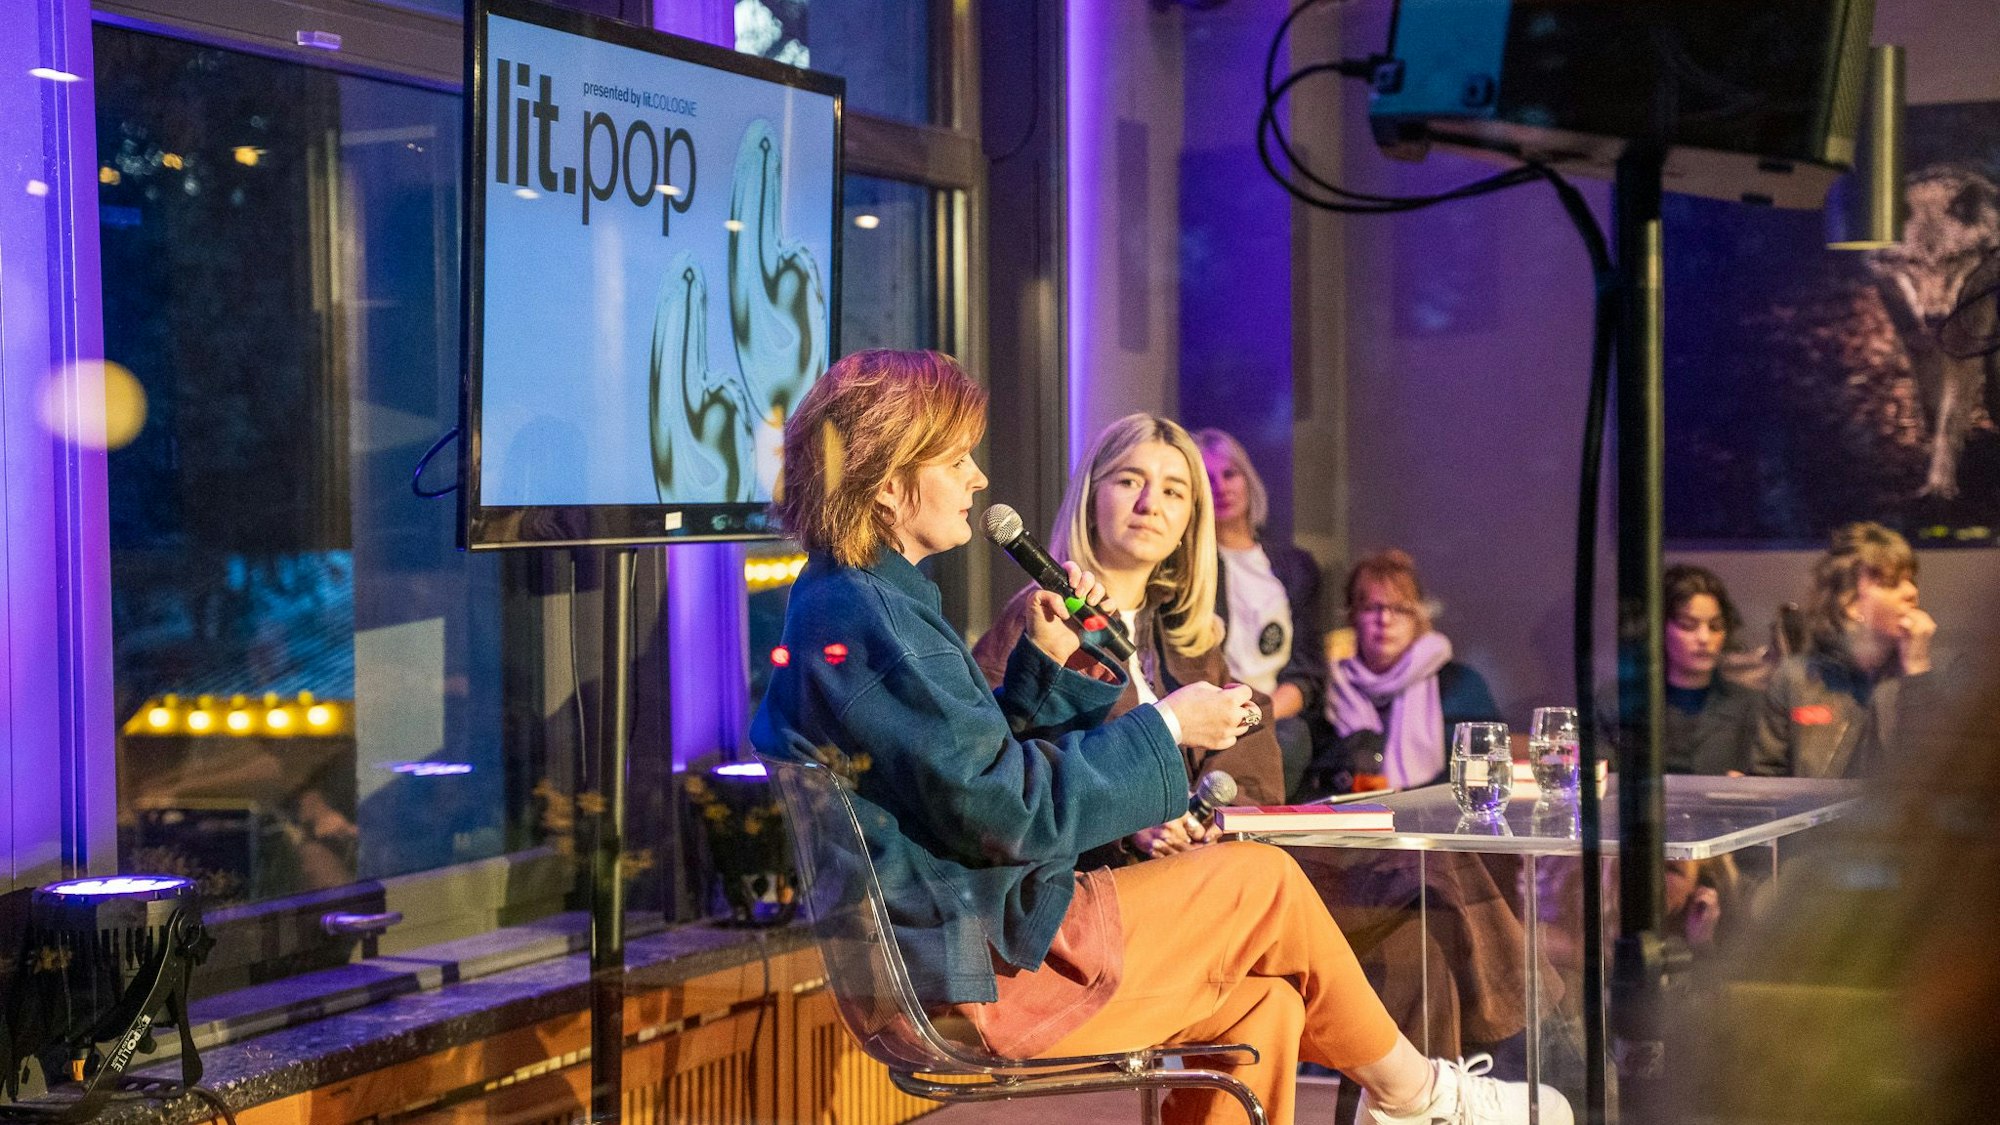 Autorin Sophia Fritz (l.) und Moderatin Maria Popov schafften bei der lit.pop im Kölner Stadtgarten eine intime Atmosphäre, in der sie über "toxische Weiblichkeit" diskutierten.